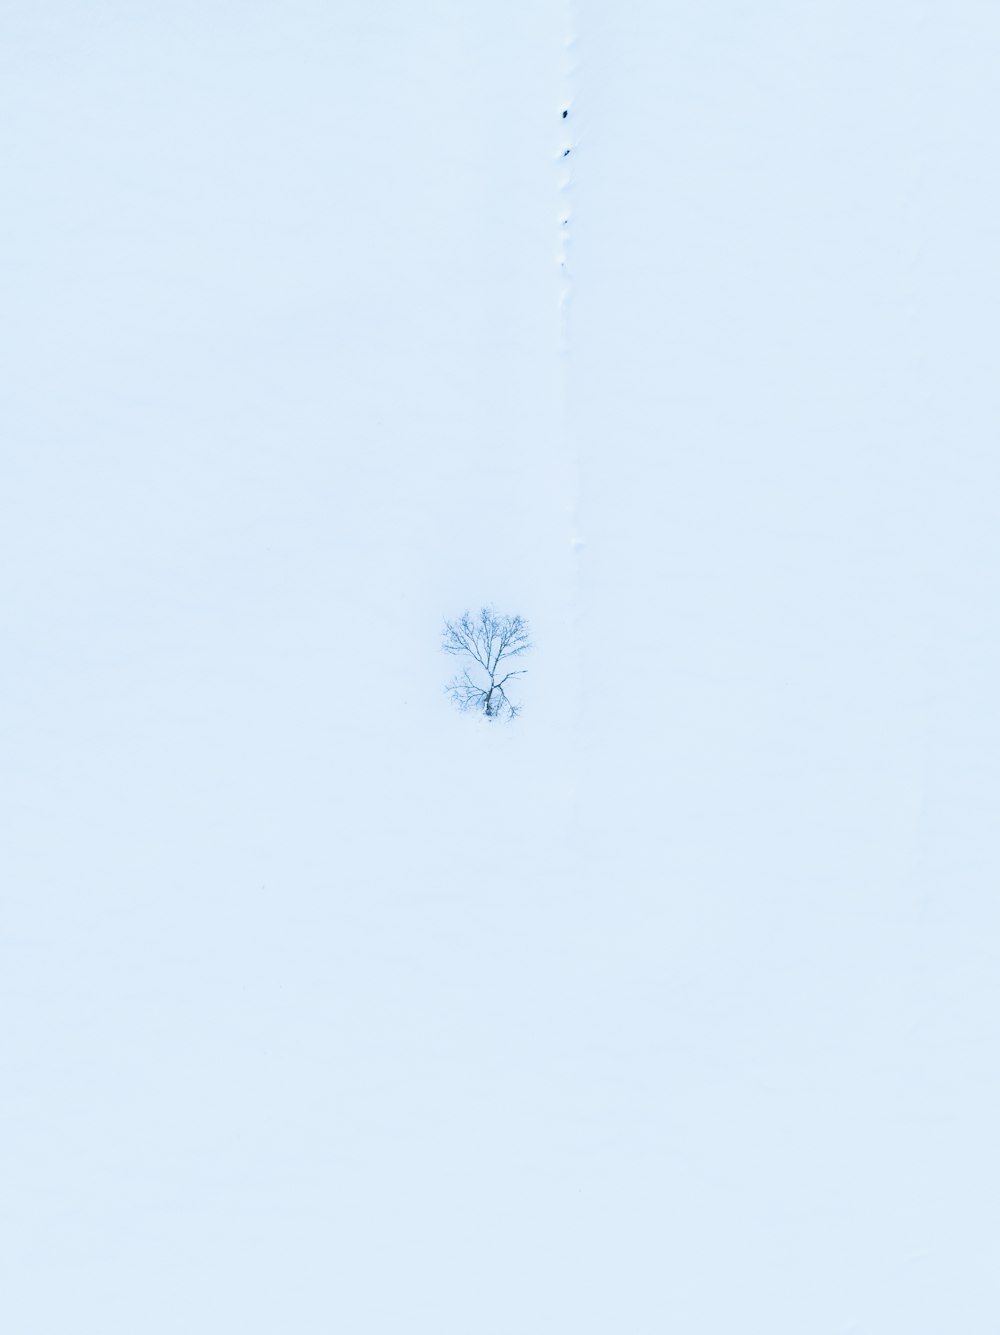 Un árbol solitario en medio de un campo nevado